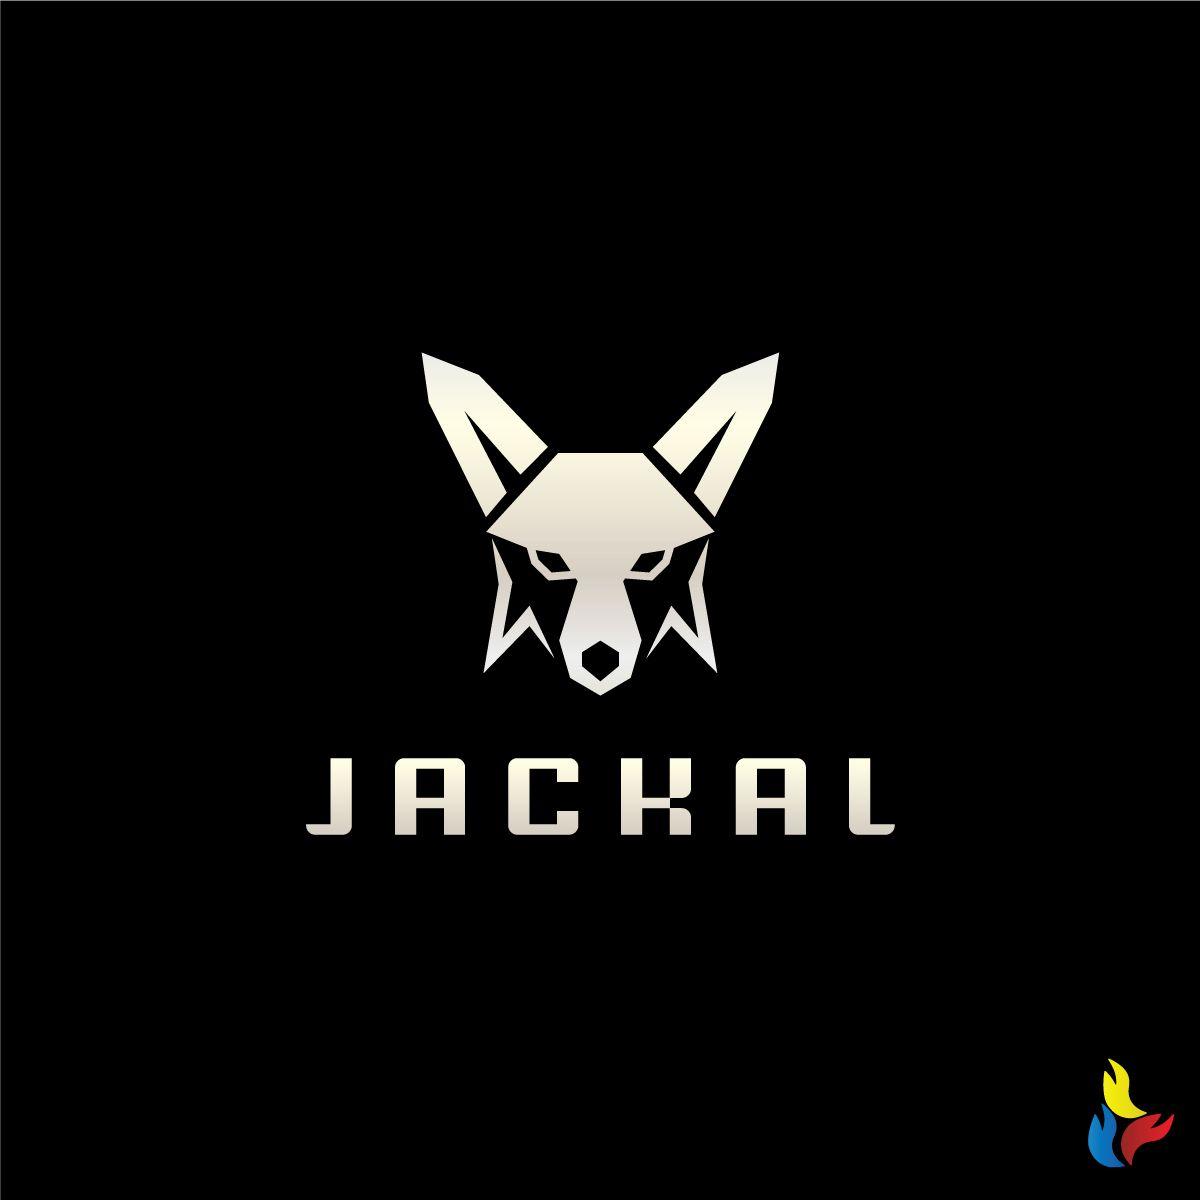 Jackal Logo - Masculine, Bold, Industrial Logo Design for JACKAL Jackal by ...